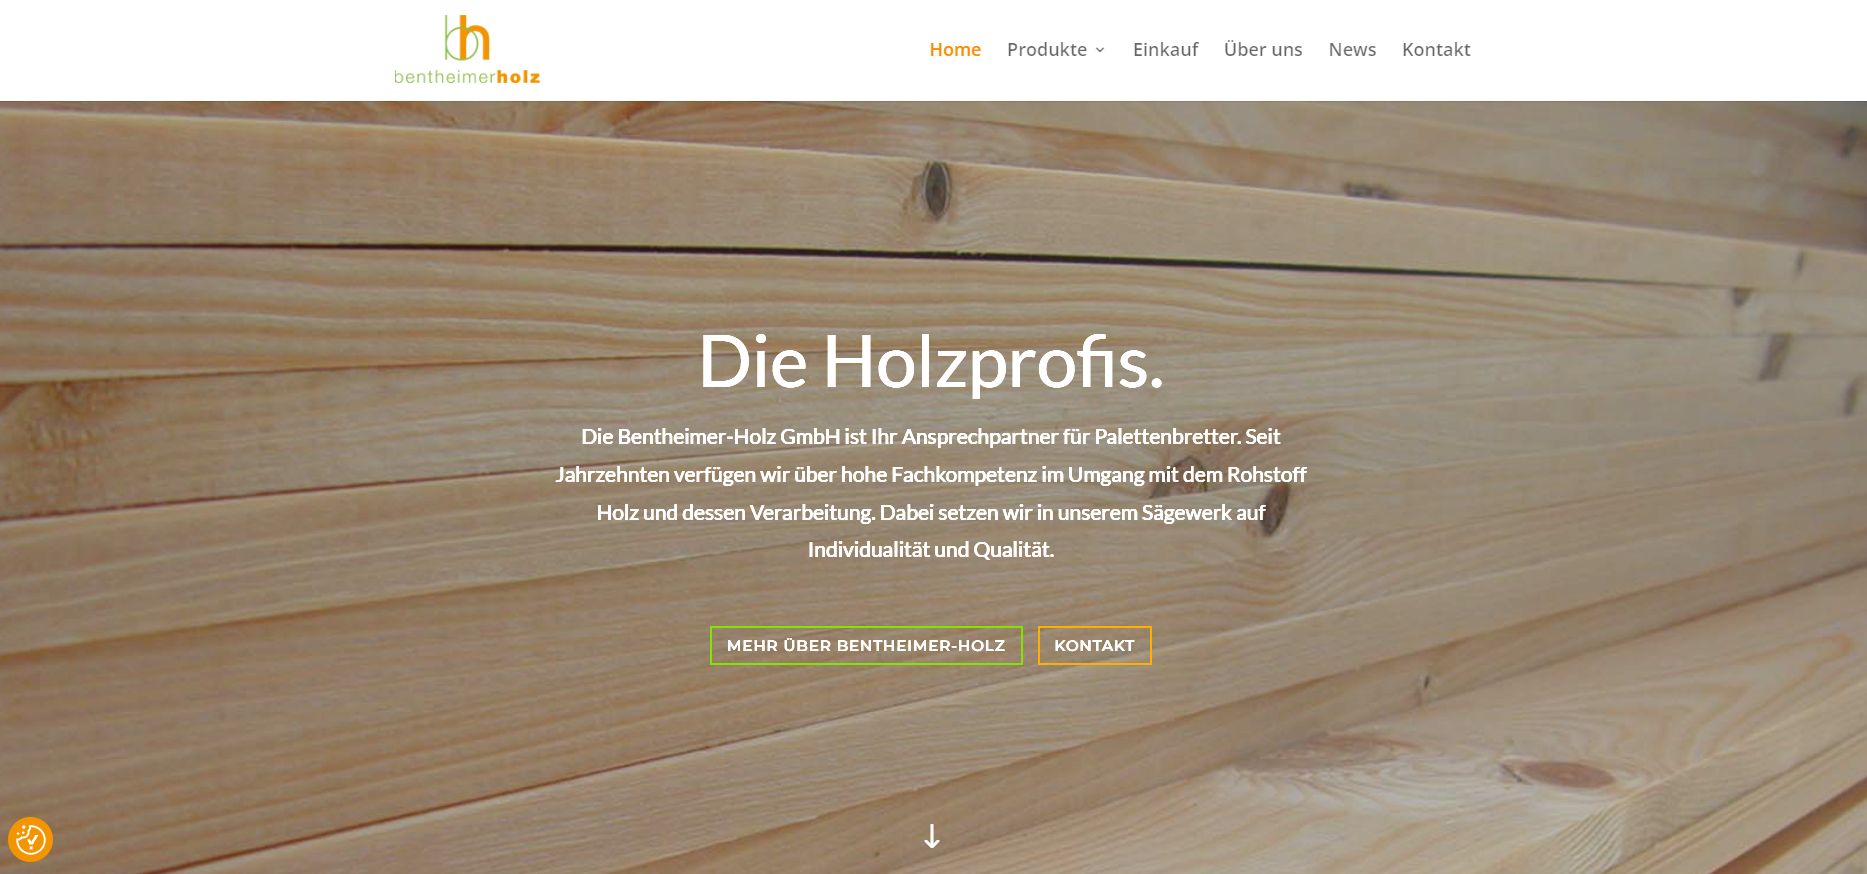 Neue Website für Bentheimer Holz